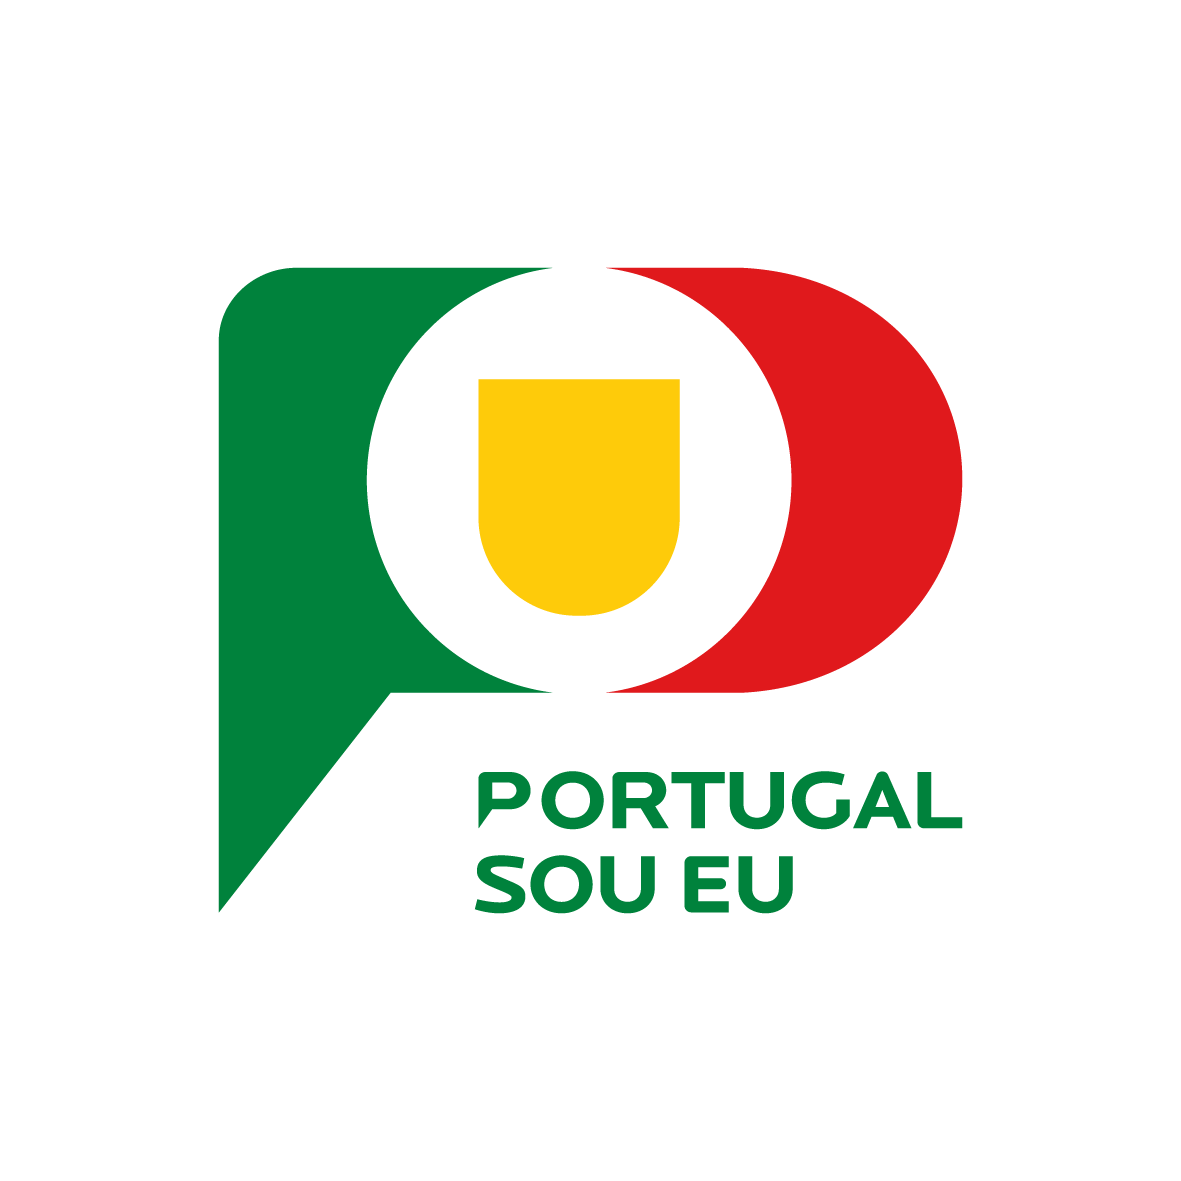 Portugal SOU EU